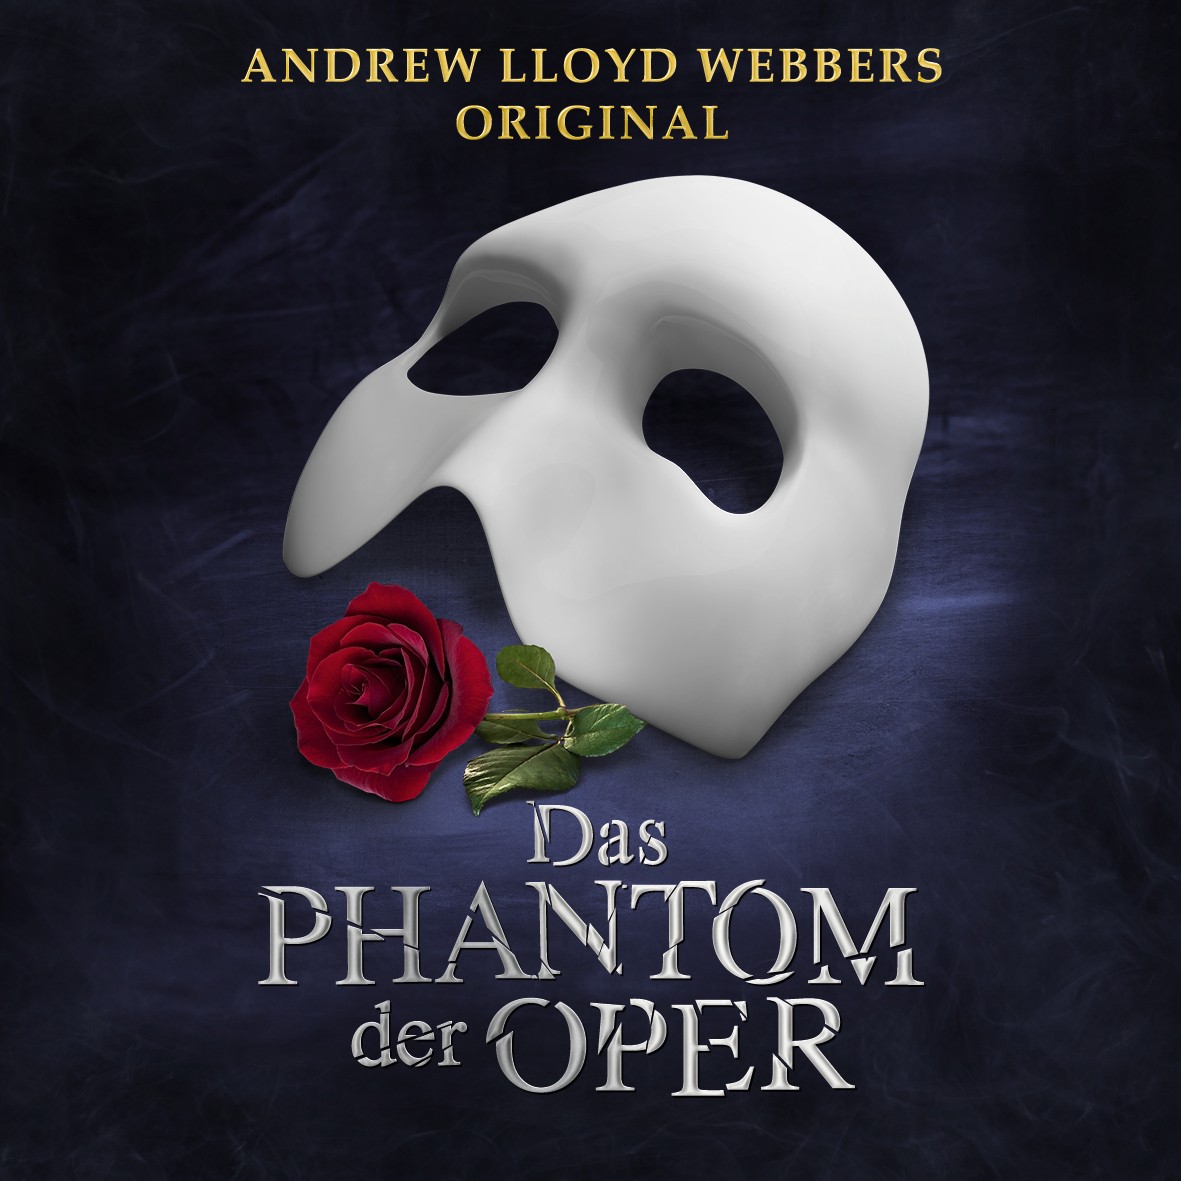 das phantom der oper – inszenierung